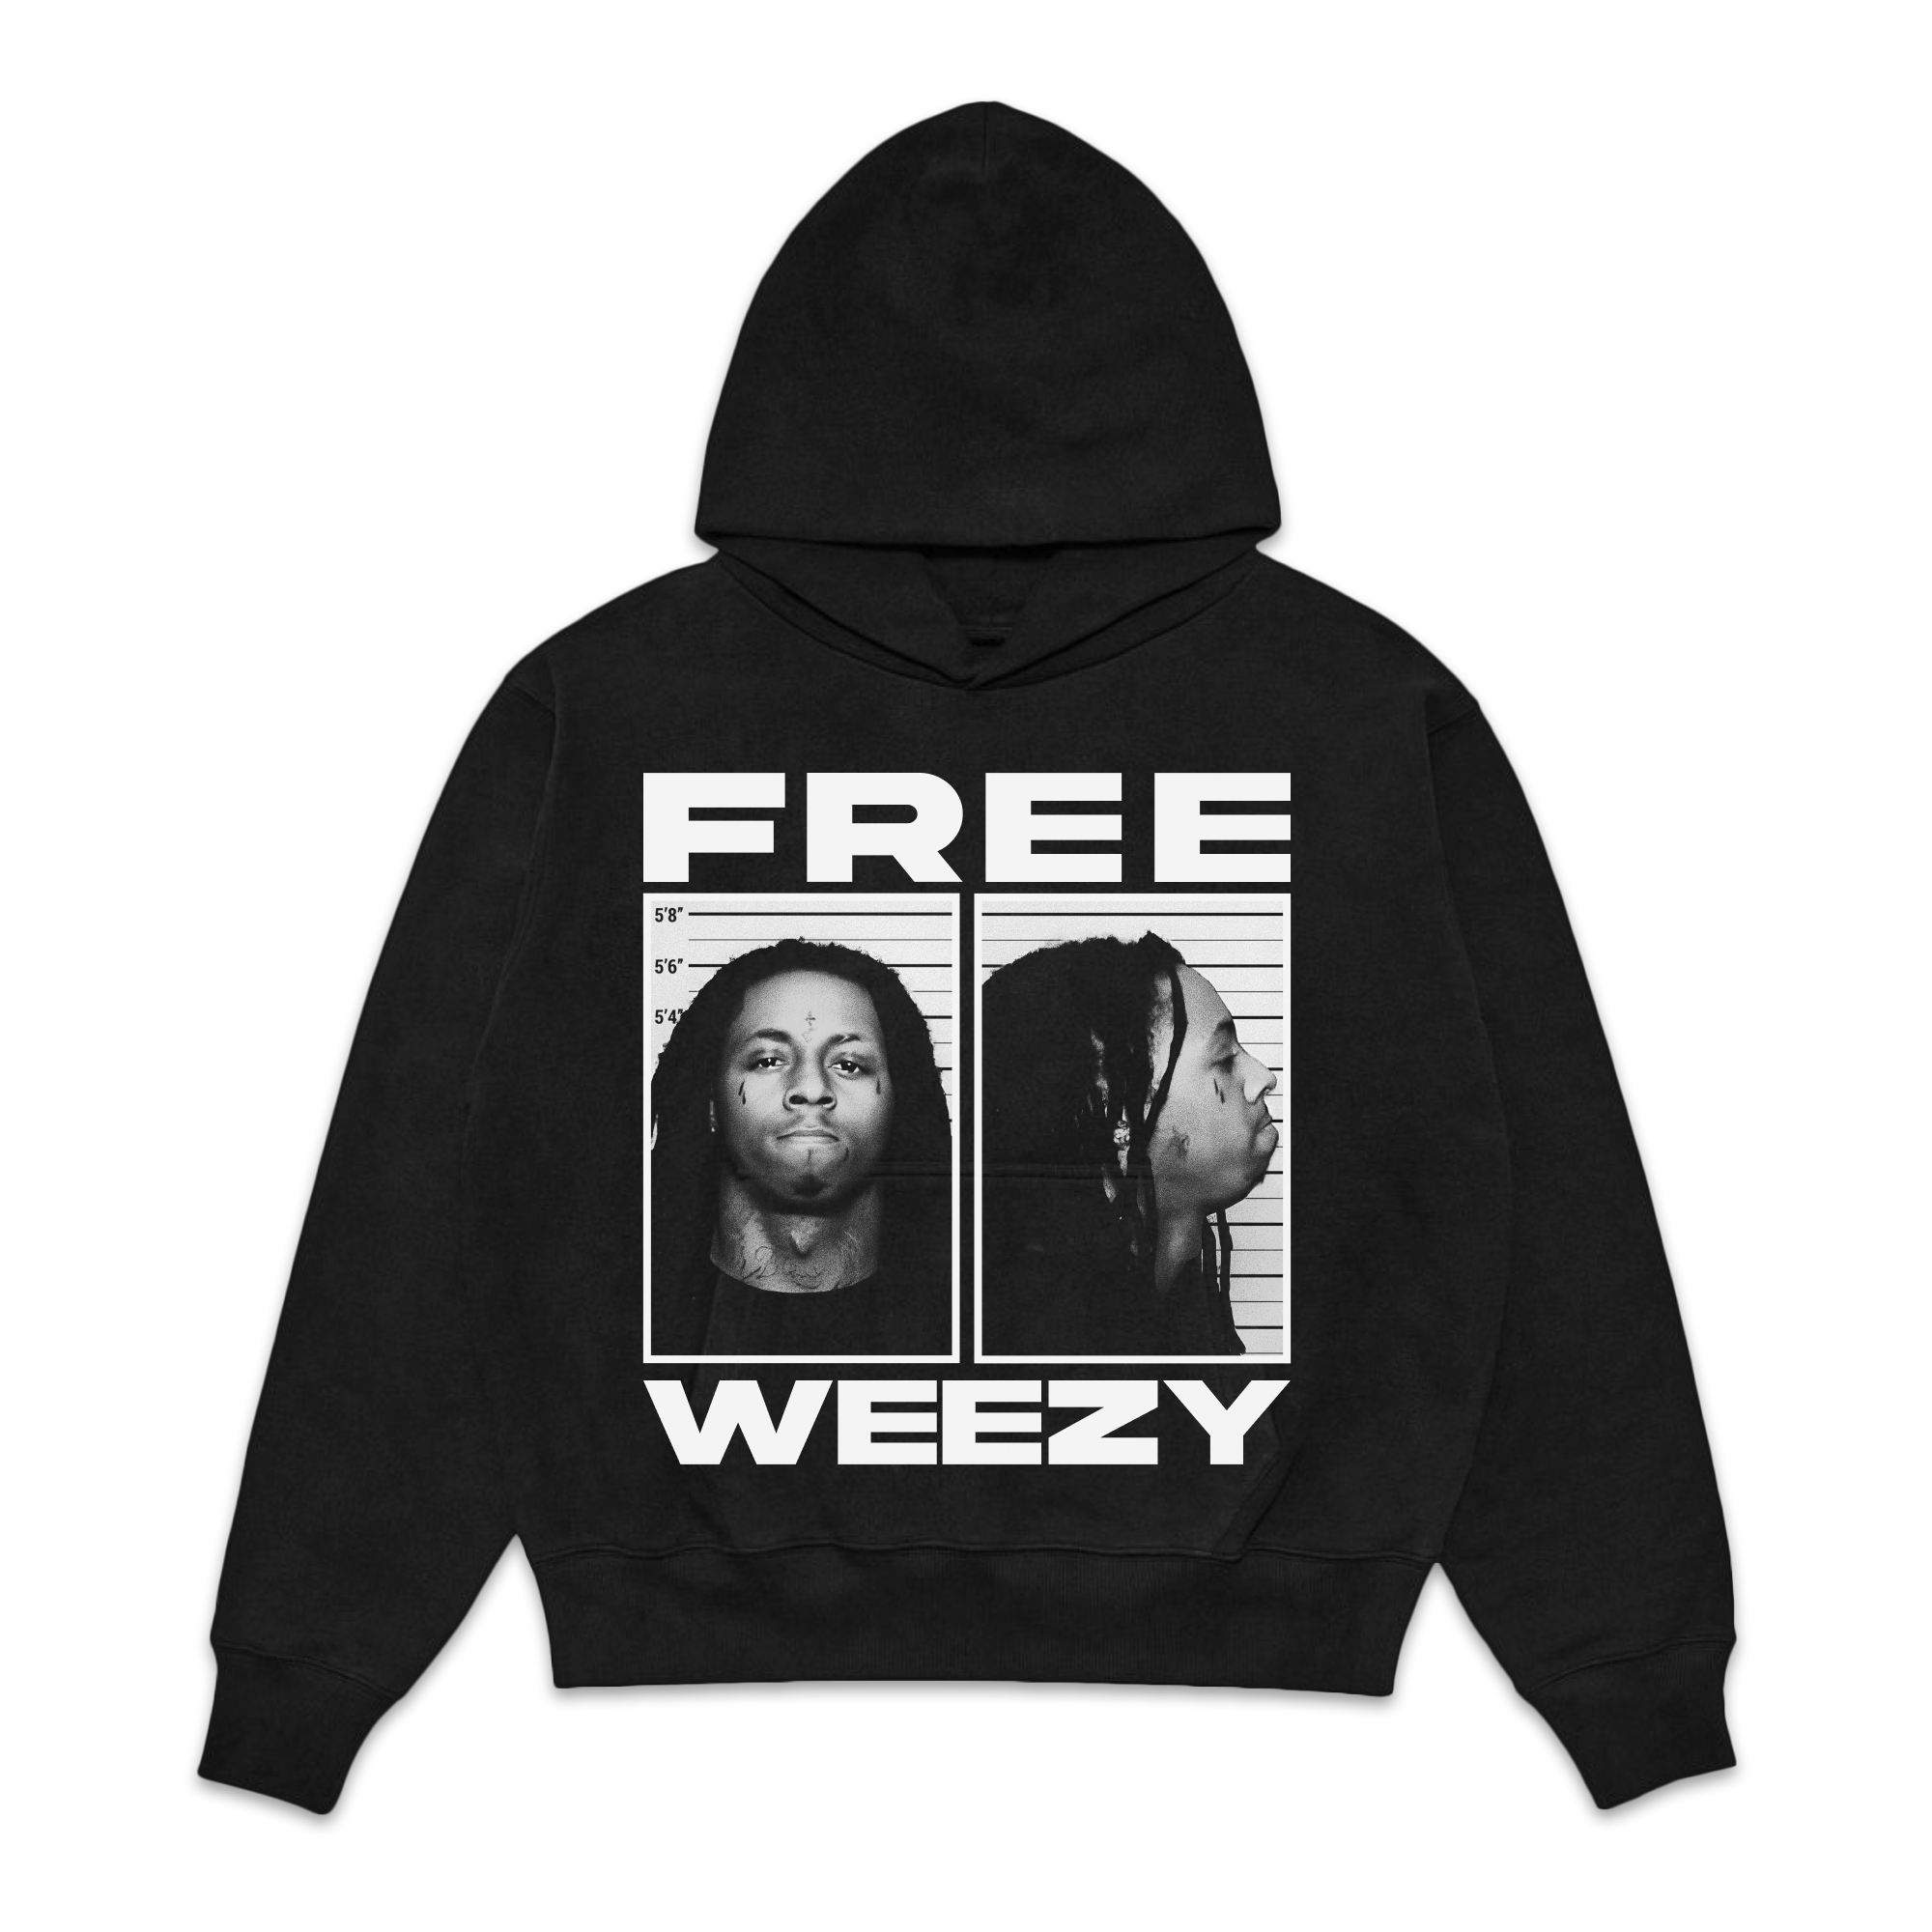 Lil Wayne "Free Weezy" Jumbo Fleece Hoodie